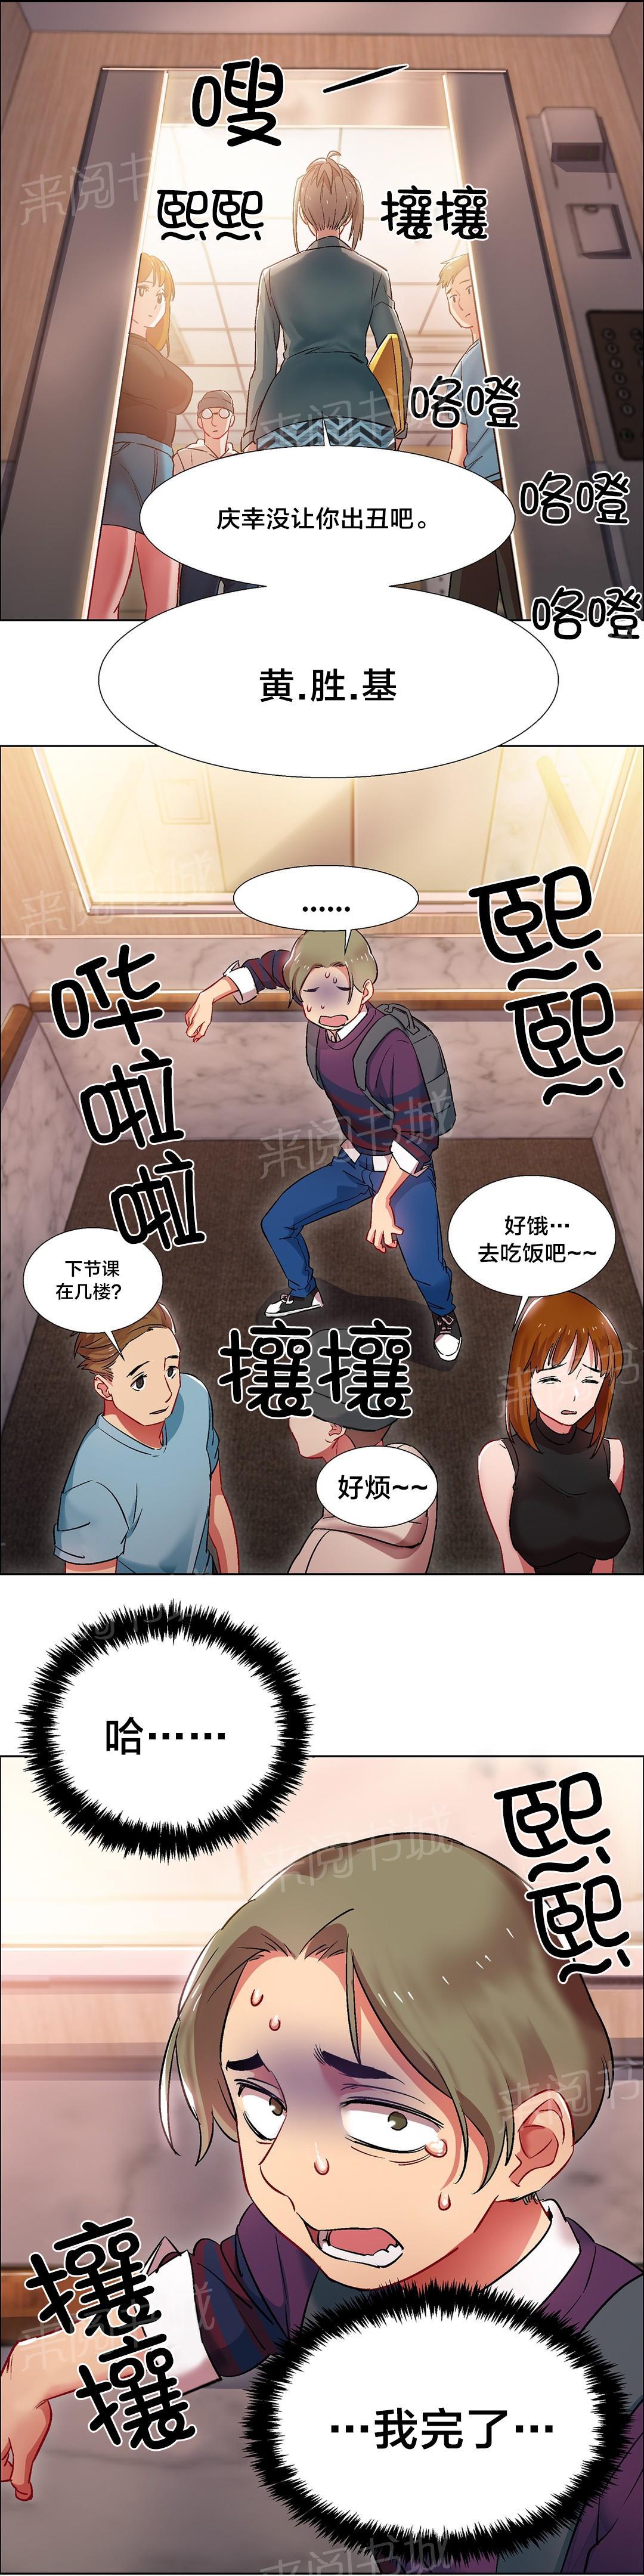 韩国污漫画 香艷小店 第16话 11